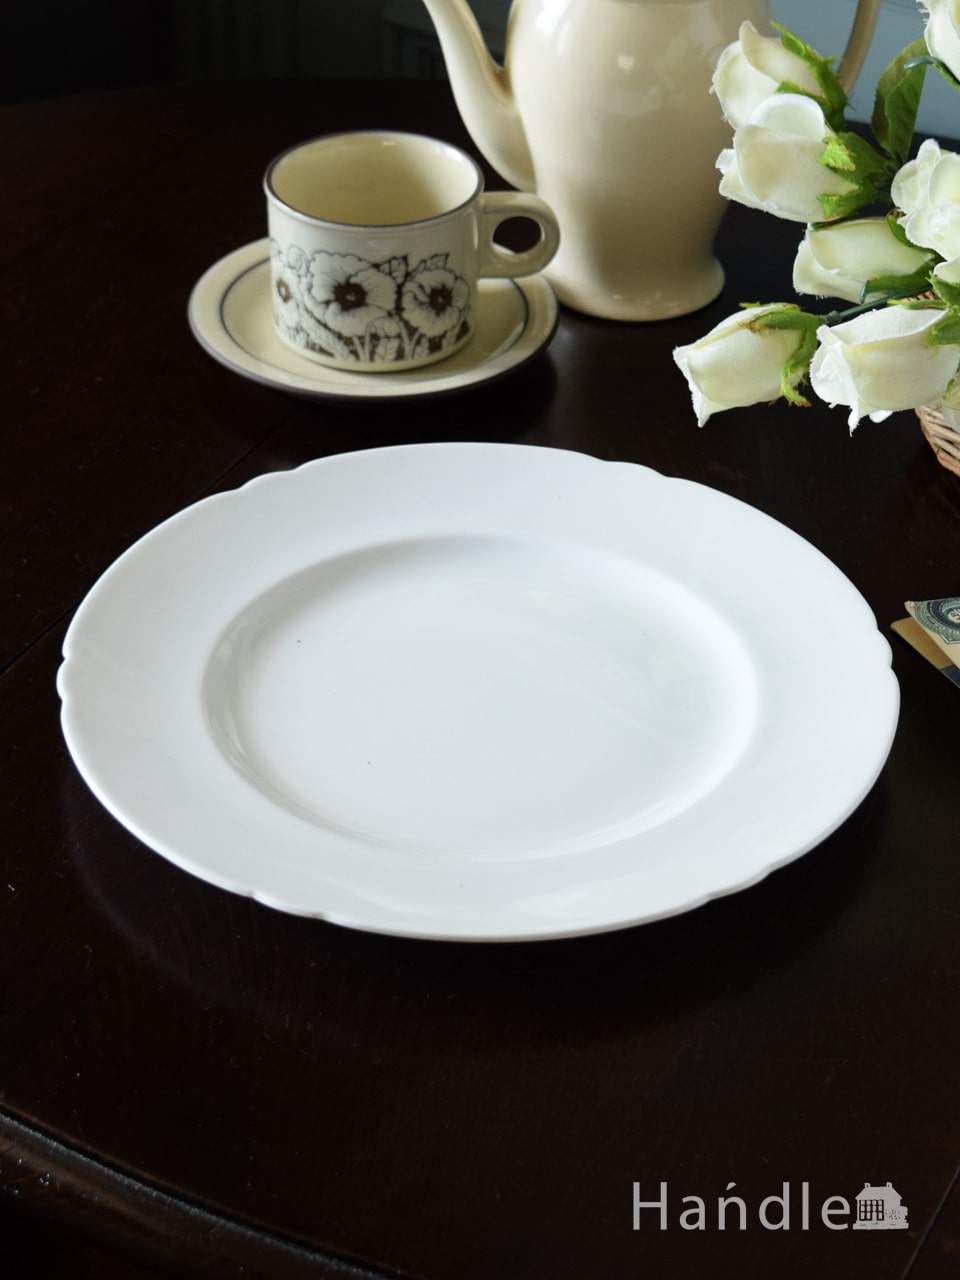 シェリー窯のアンティークプレート、真っ白なshelleyのお皿 (m-5976-z)